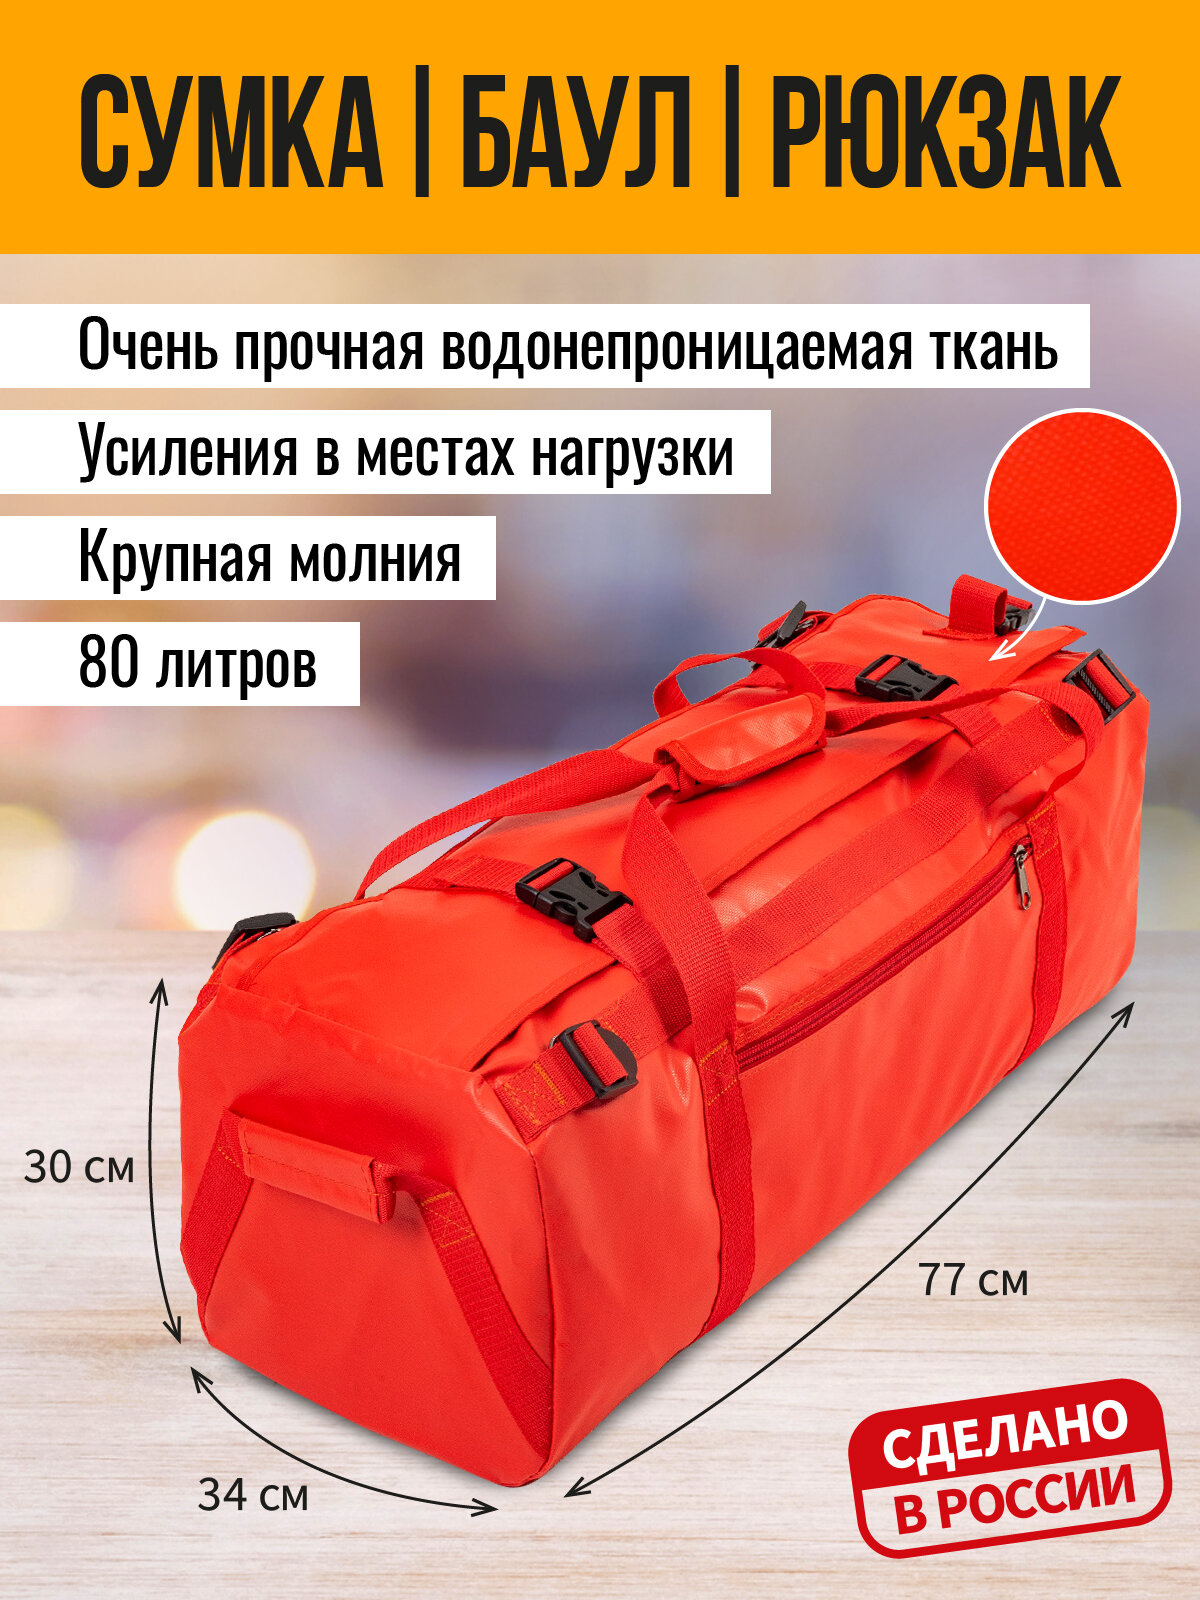 "Гермосумки ООО "АРТ БЭГ" - это сумка-рюкзак для защиты ваших вещей от воды и грязи! 80л, красный, 30*34*78см